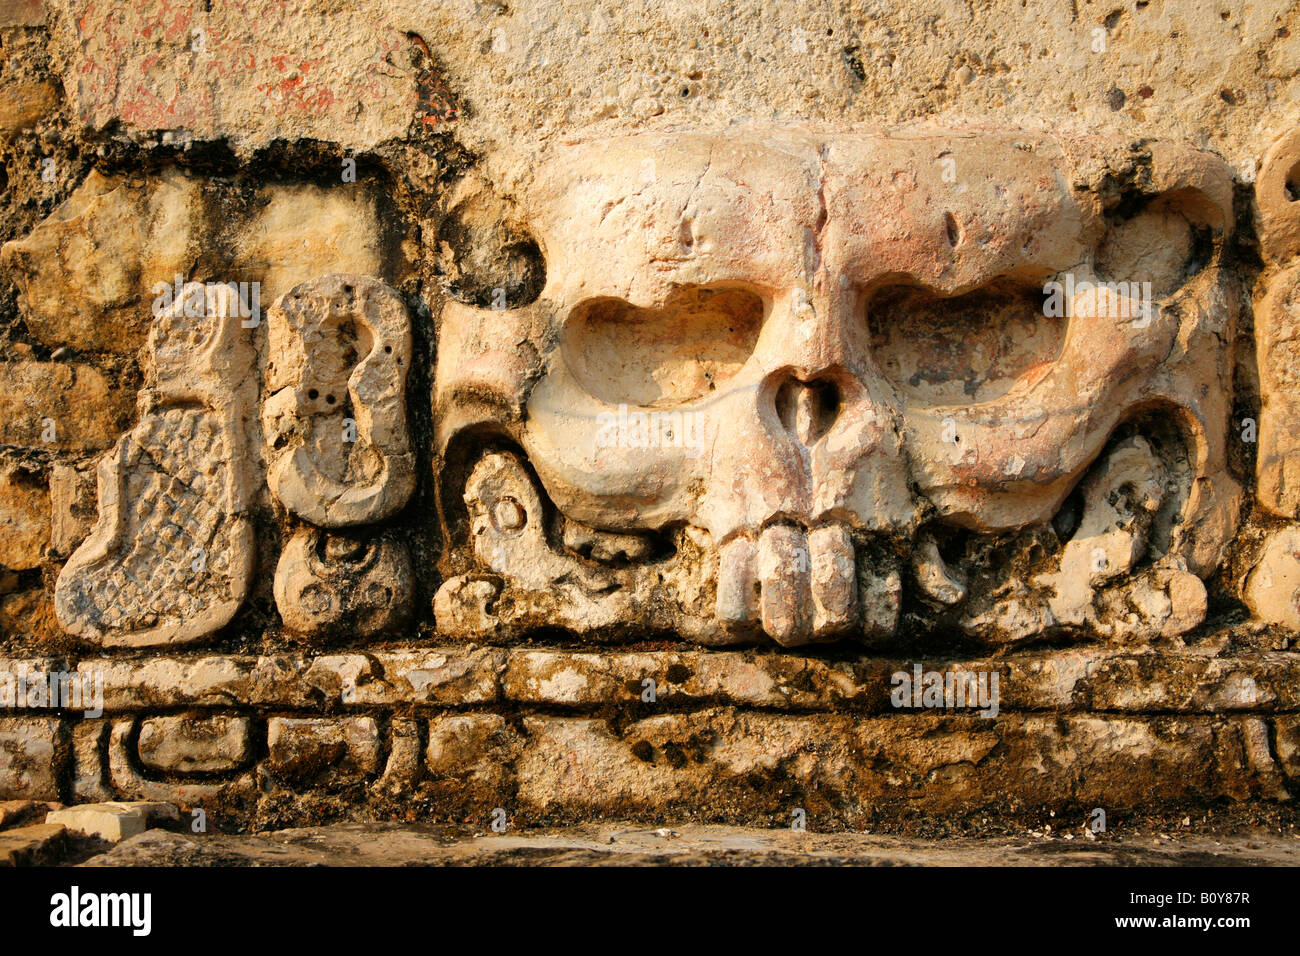 Releif détail du Grupo de Inscripciones ou Inscriptiptions groupe au Mexique Chiapas Palenque Ruins Banque D'Images